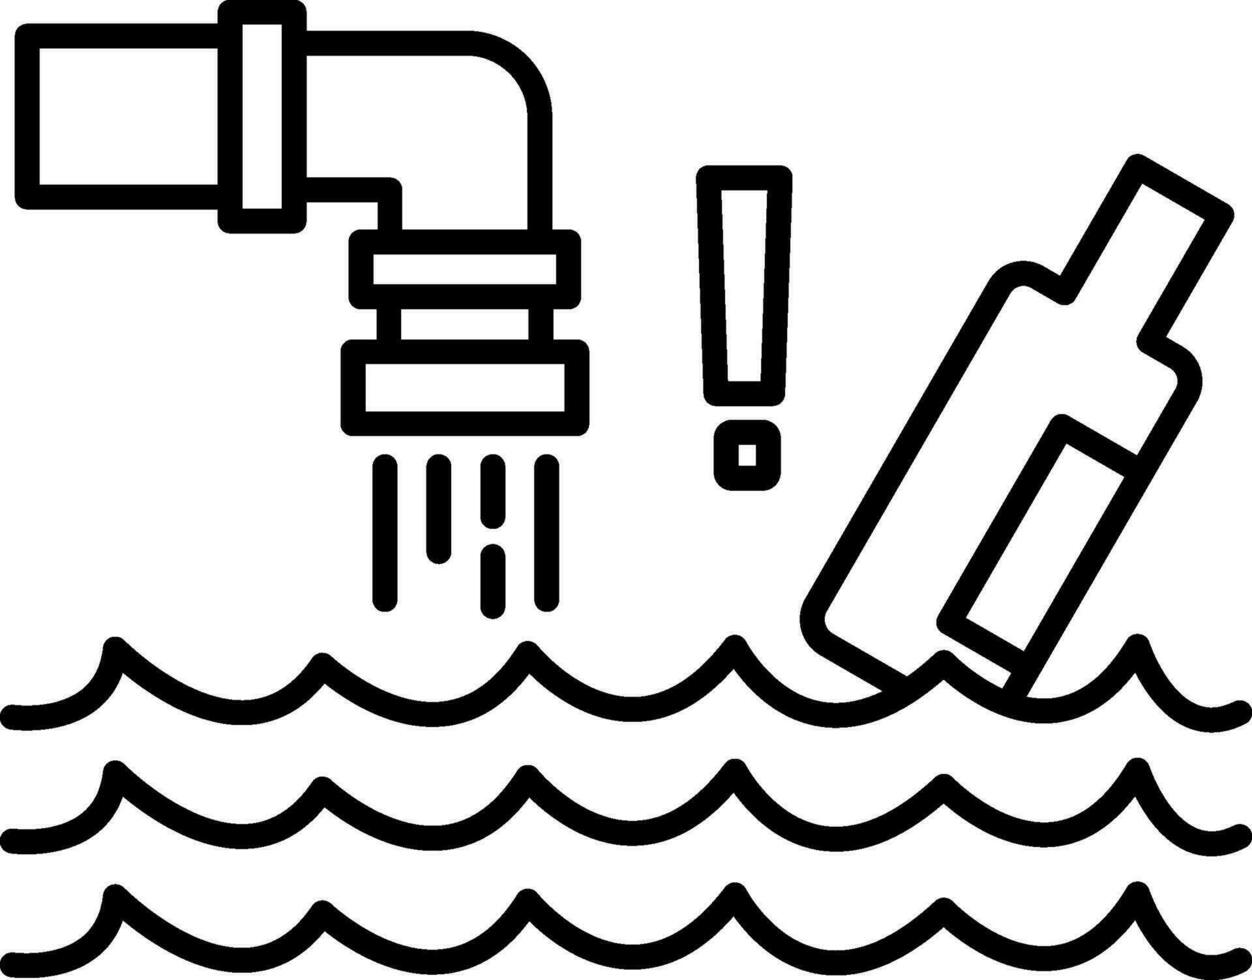 icône de ligne de pollution de l'eau vecteur